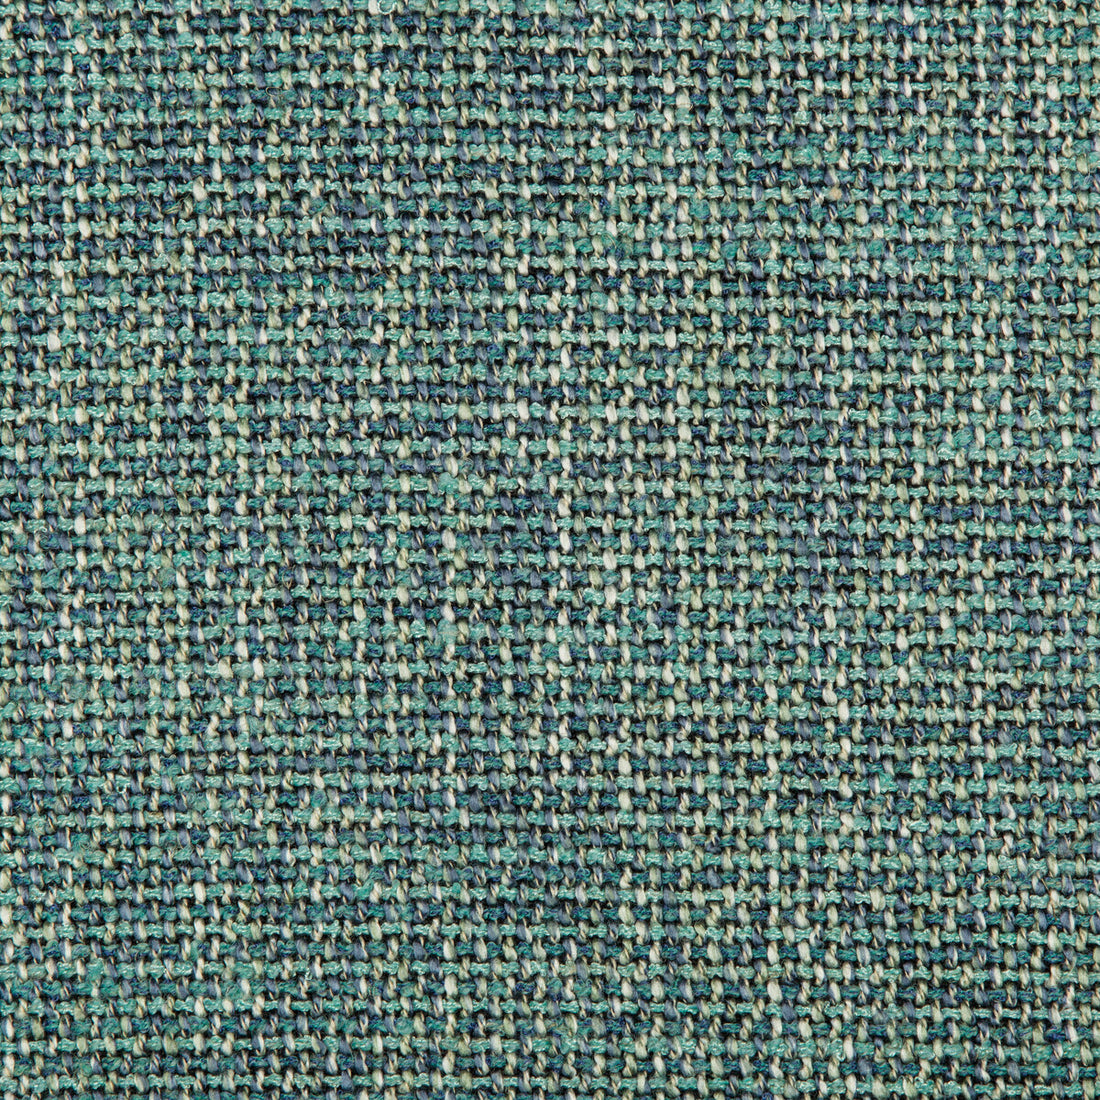 Kravet Design fabric in 35635-35 color - pattern 35635.35.0 - by Kravet Design